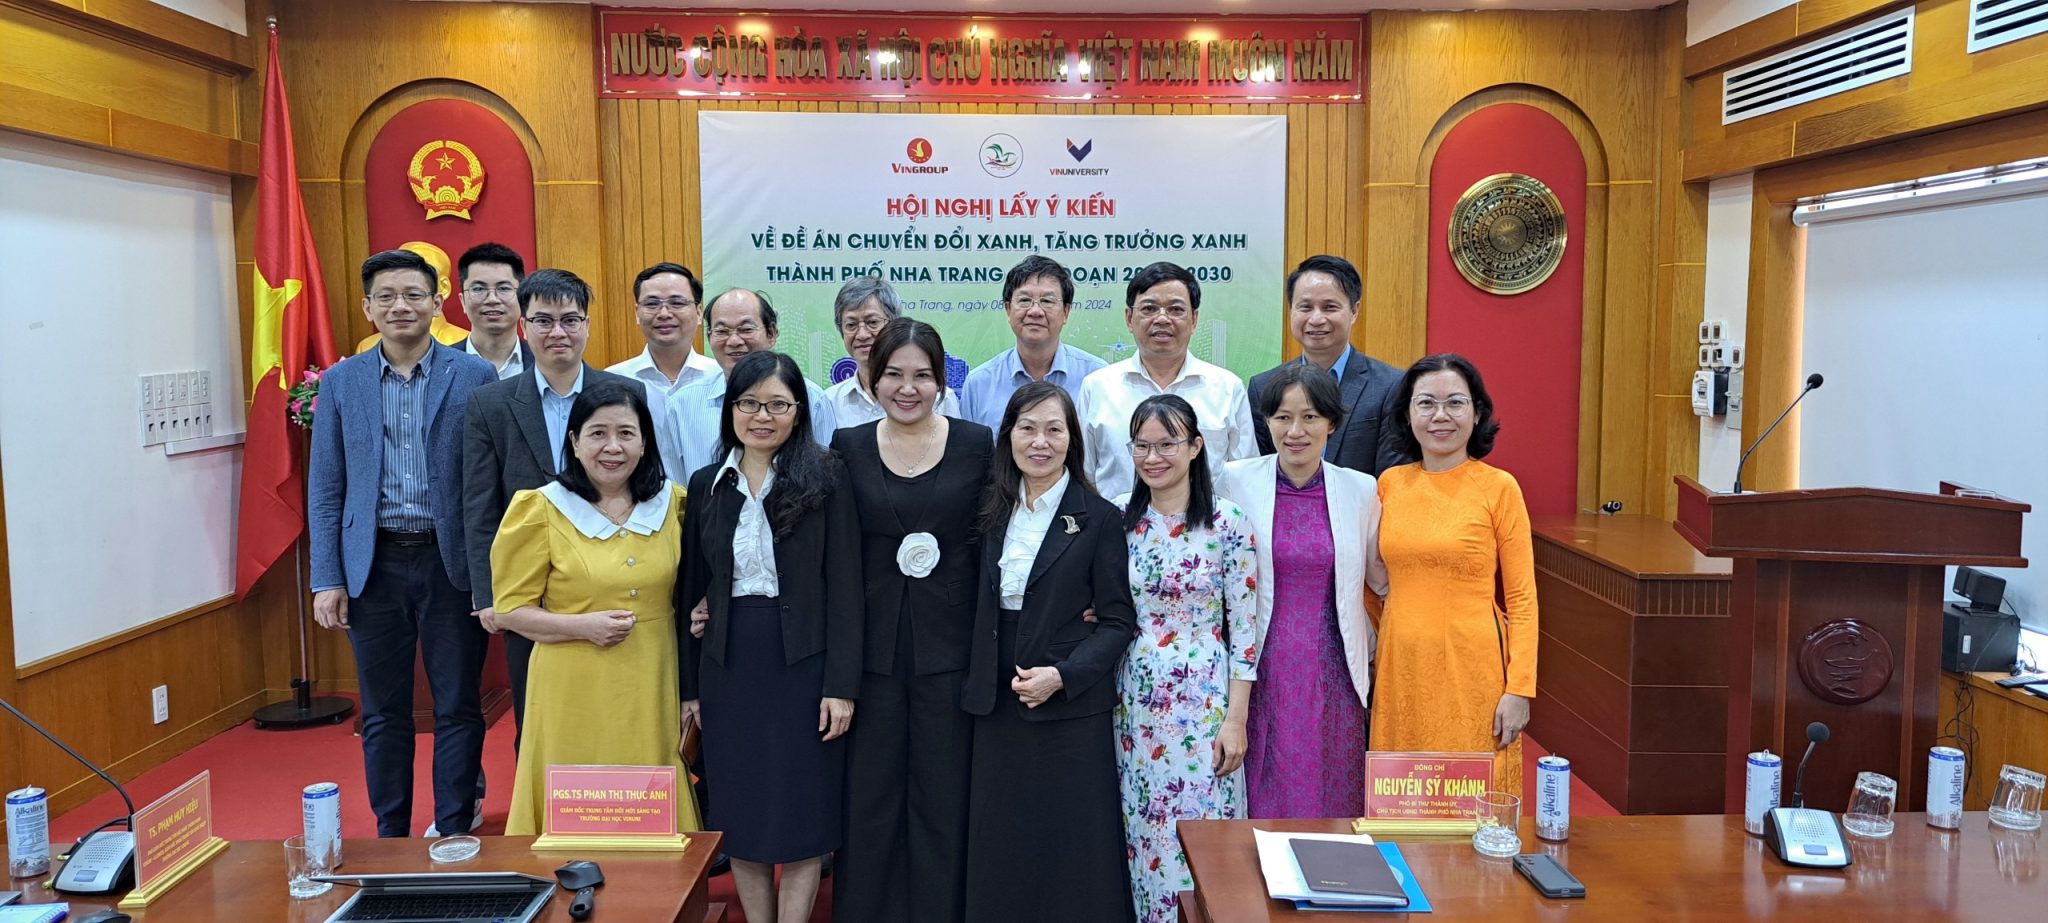 Chuyến công tác và khảo sát thực địa tại Thành phố Nha Trang của nhóm chuyên gia phát triển Đề án Chuyển đổi xanh, Tăng trưởng xanh từ VinUni